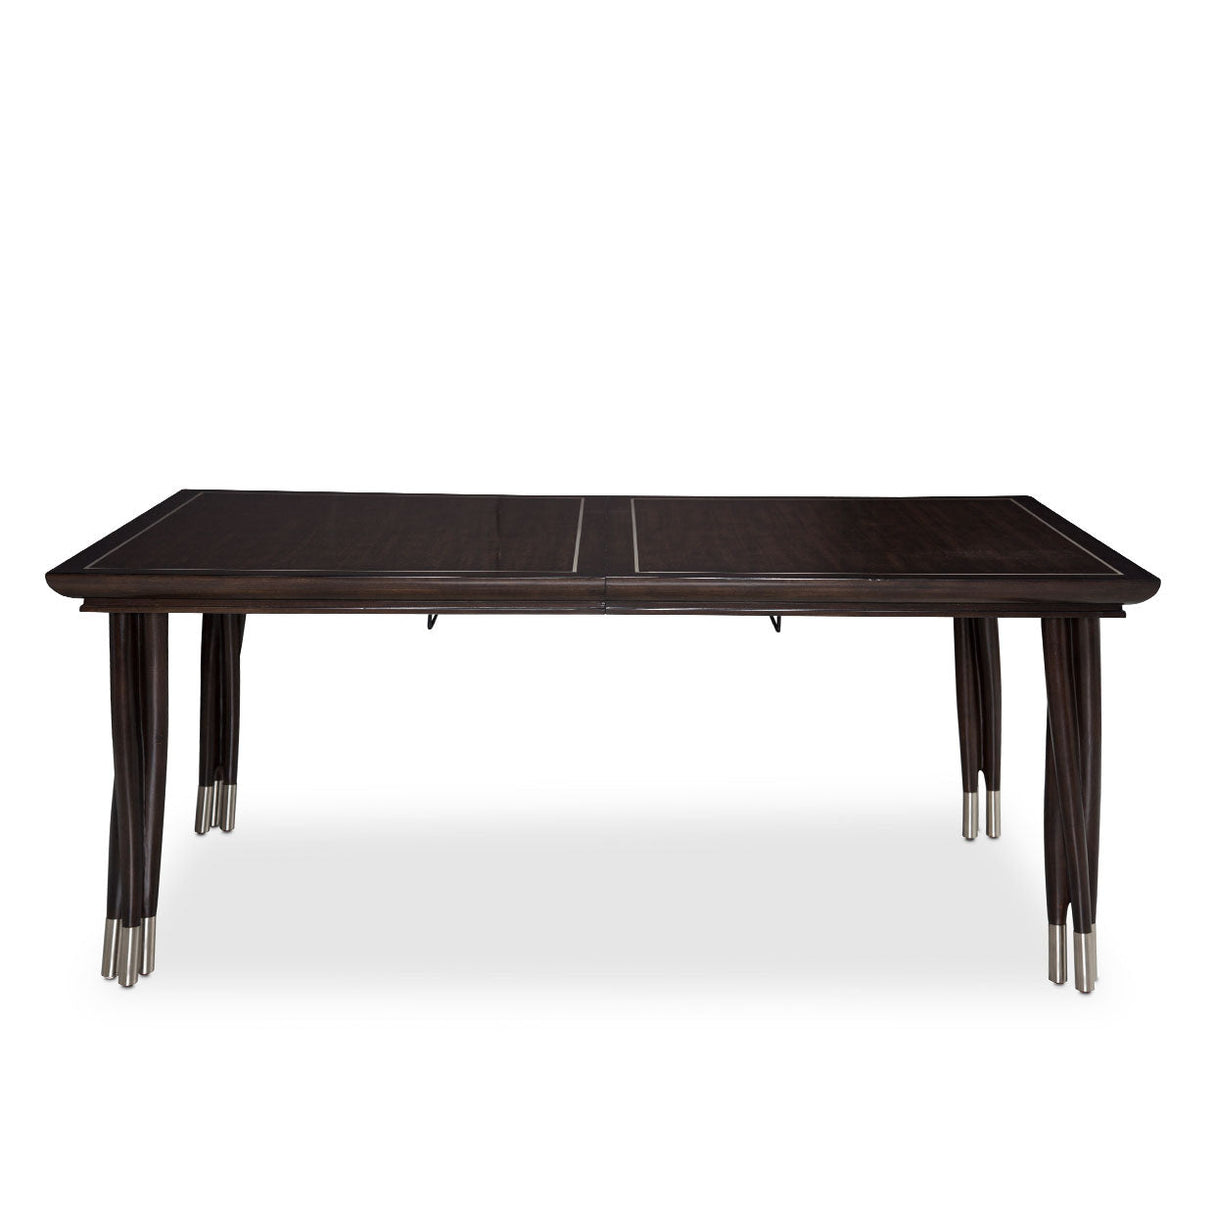 Aico Furniture - Paris Chic 5 Piece Rectangular Dining Table Set In Espresso - N9003000-409-5Set